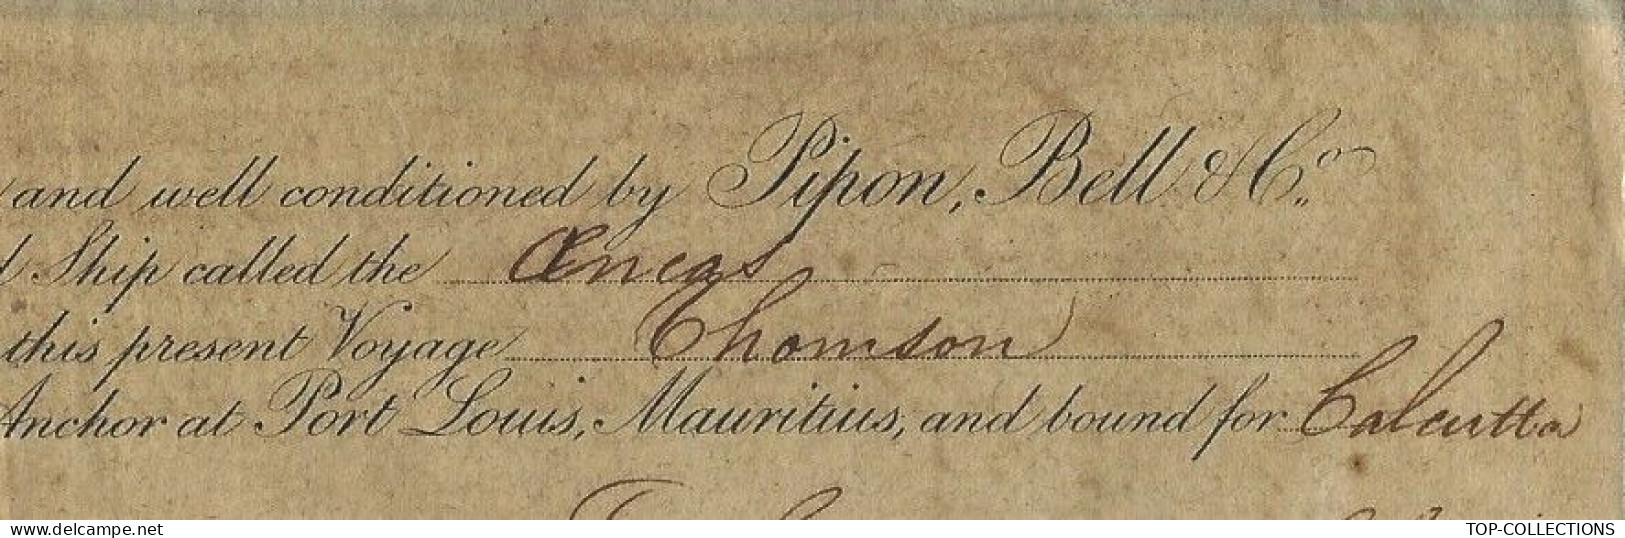 1851 RARE BILL OF LADING CONNAISSEMENT  De Port  Louis Ile Maurice  >Calcutta Inde Cargaison Sovereign En Argent V.HIST. - 1800 – 1899